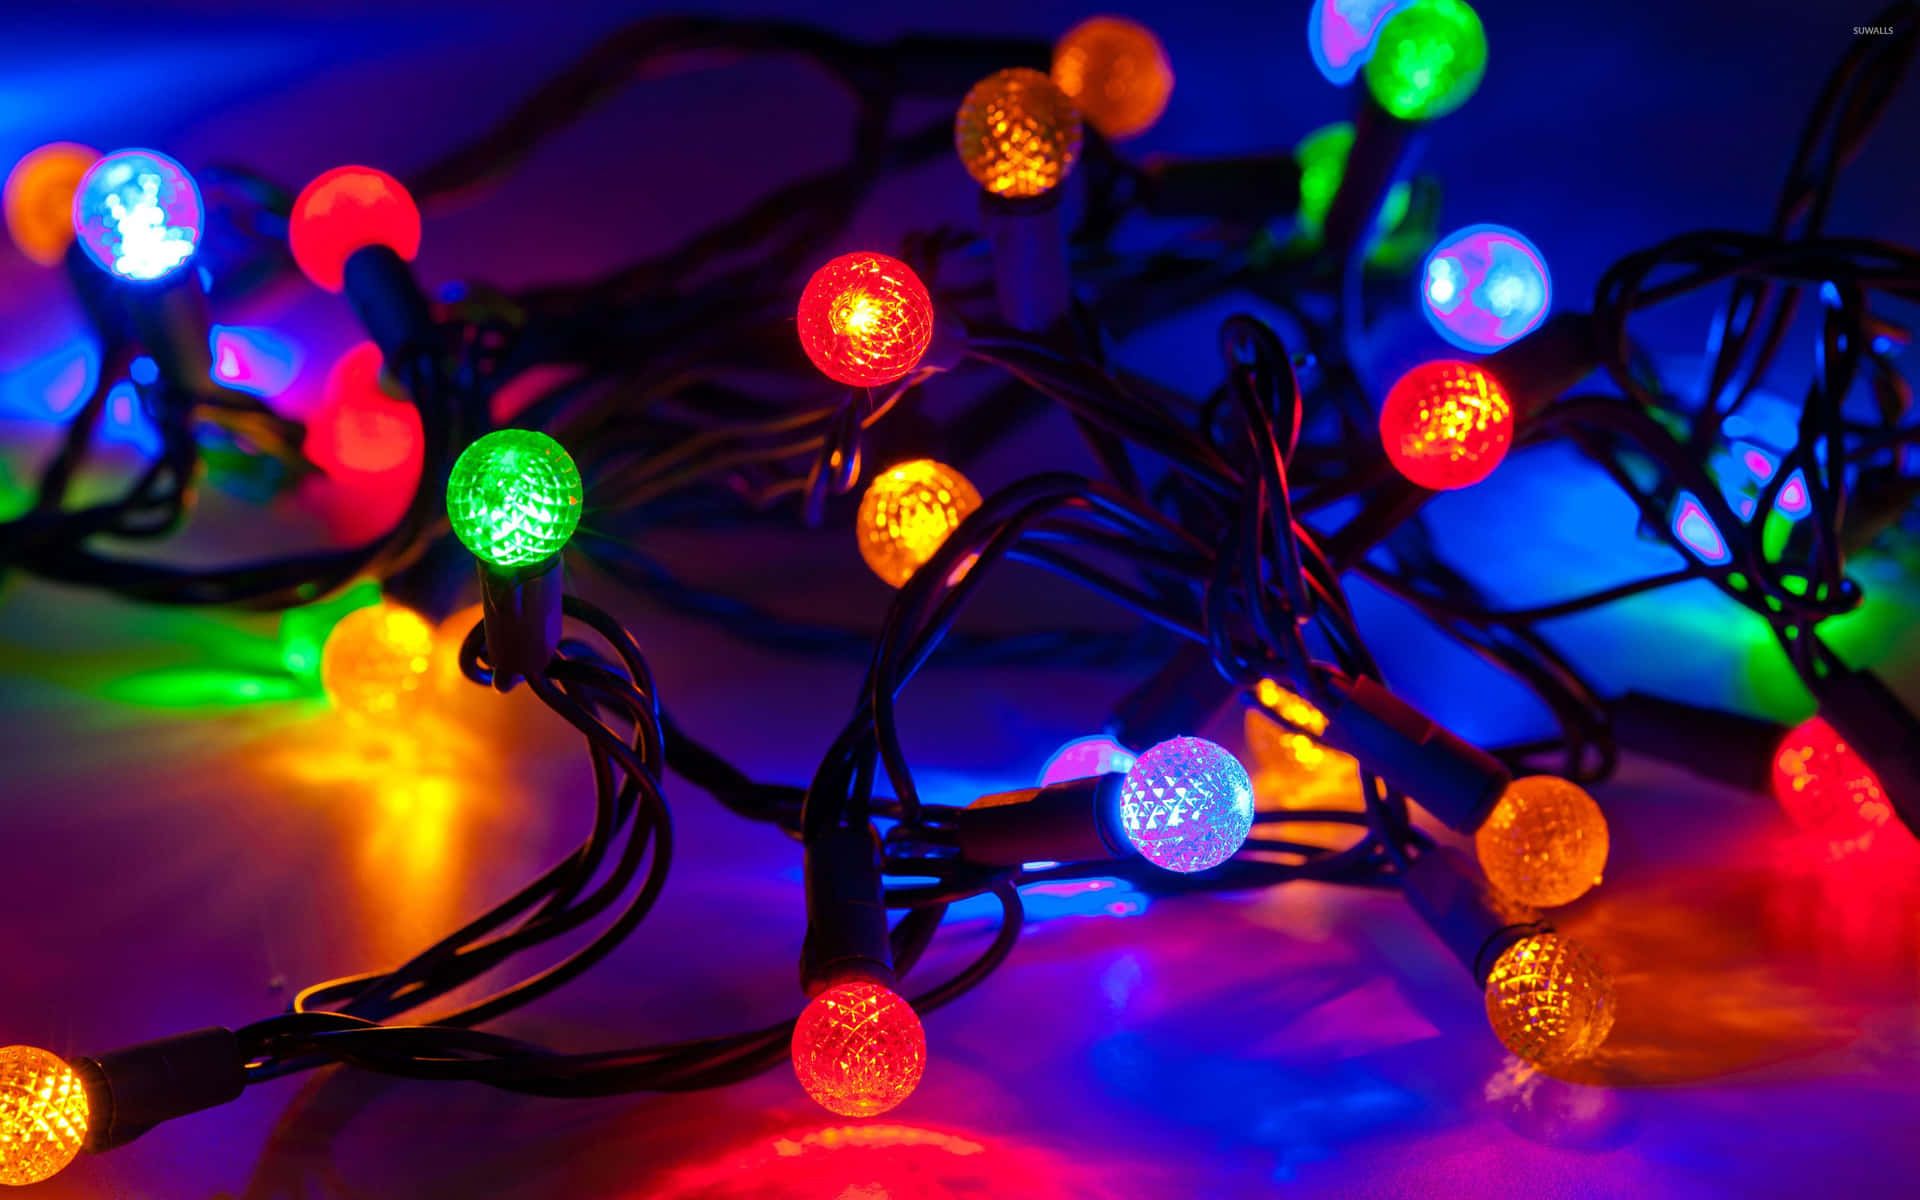 Imagende Luces De Navidad Coloridas En Tonos Azules Para Fondo De Pantalla De Computadora O Móvil.